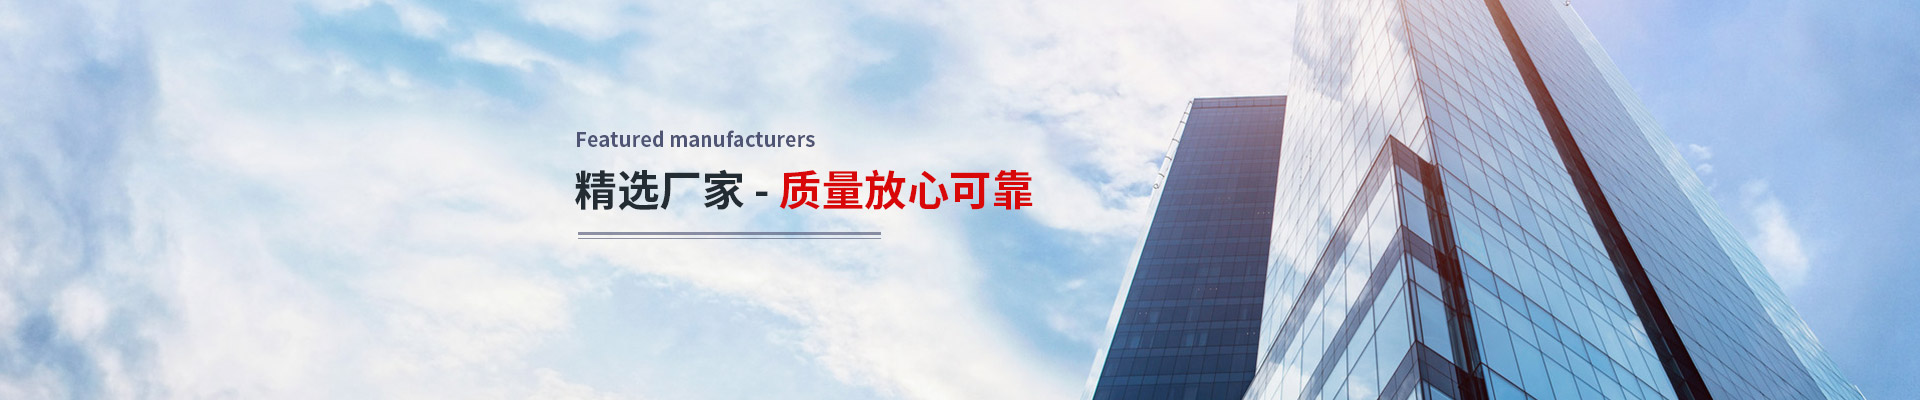 上海隆旅电子科技有限公司公司介绍